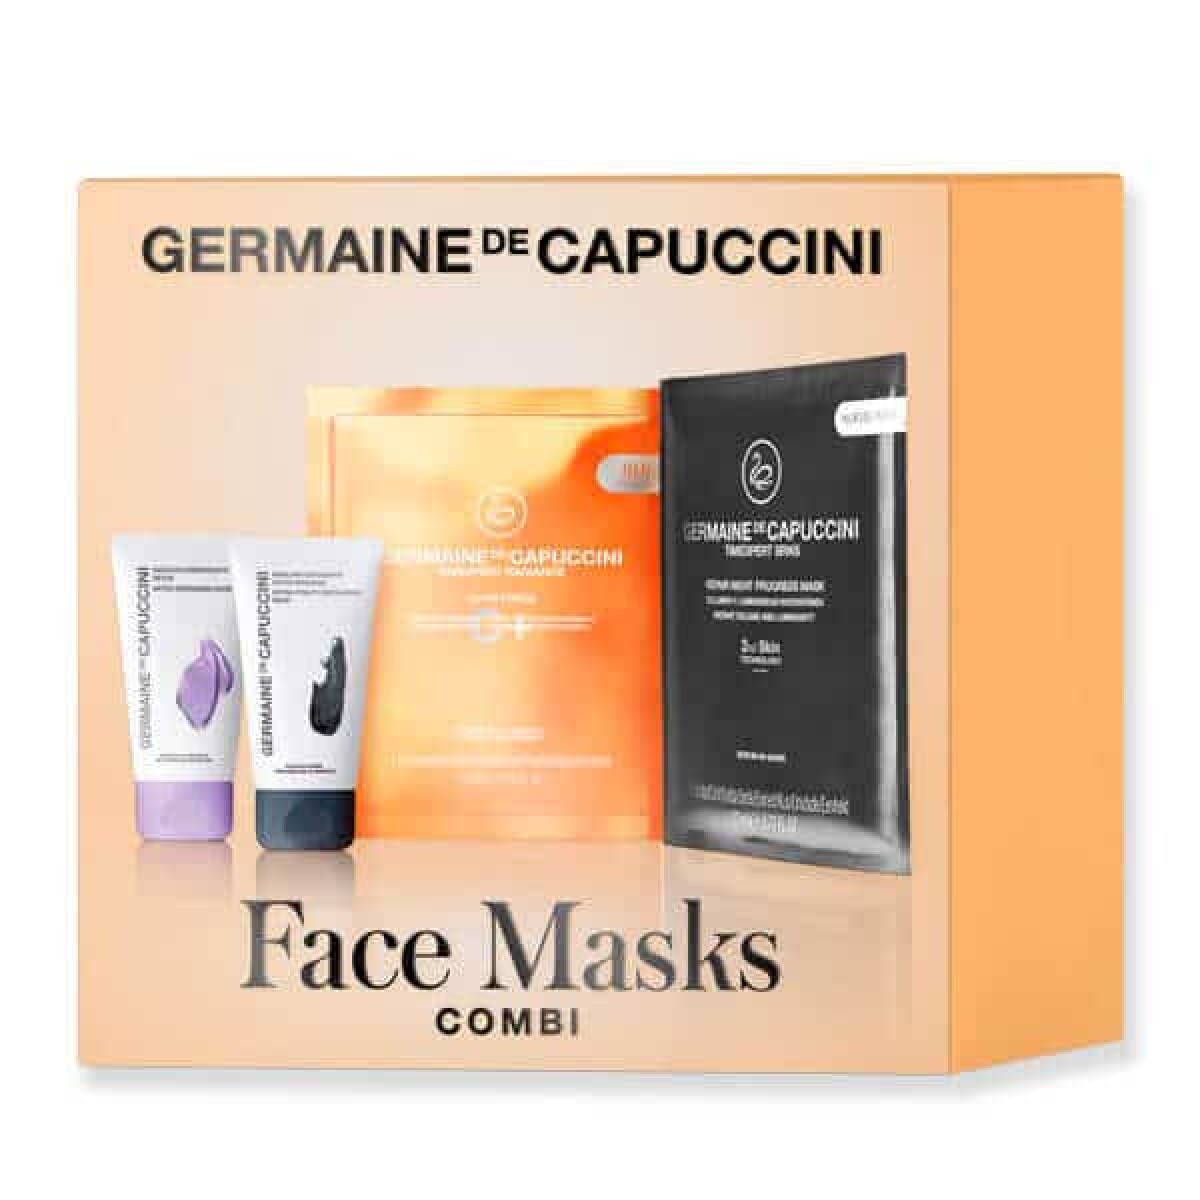 Face Masks Combi - Germaine de Capuccini 